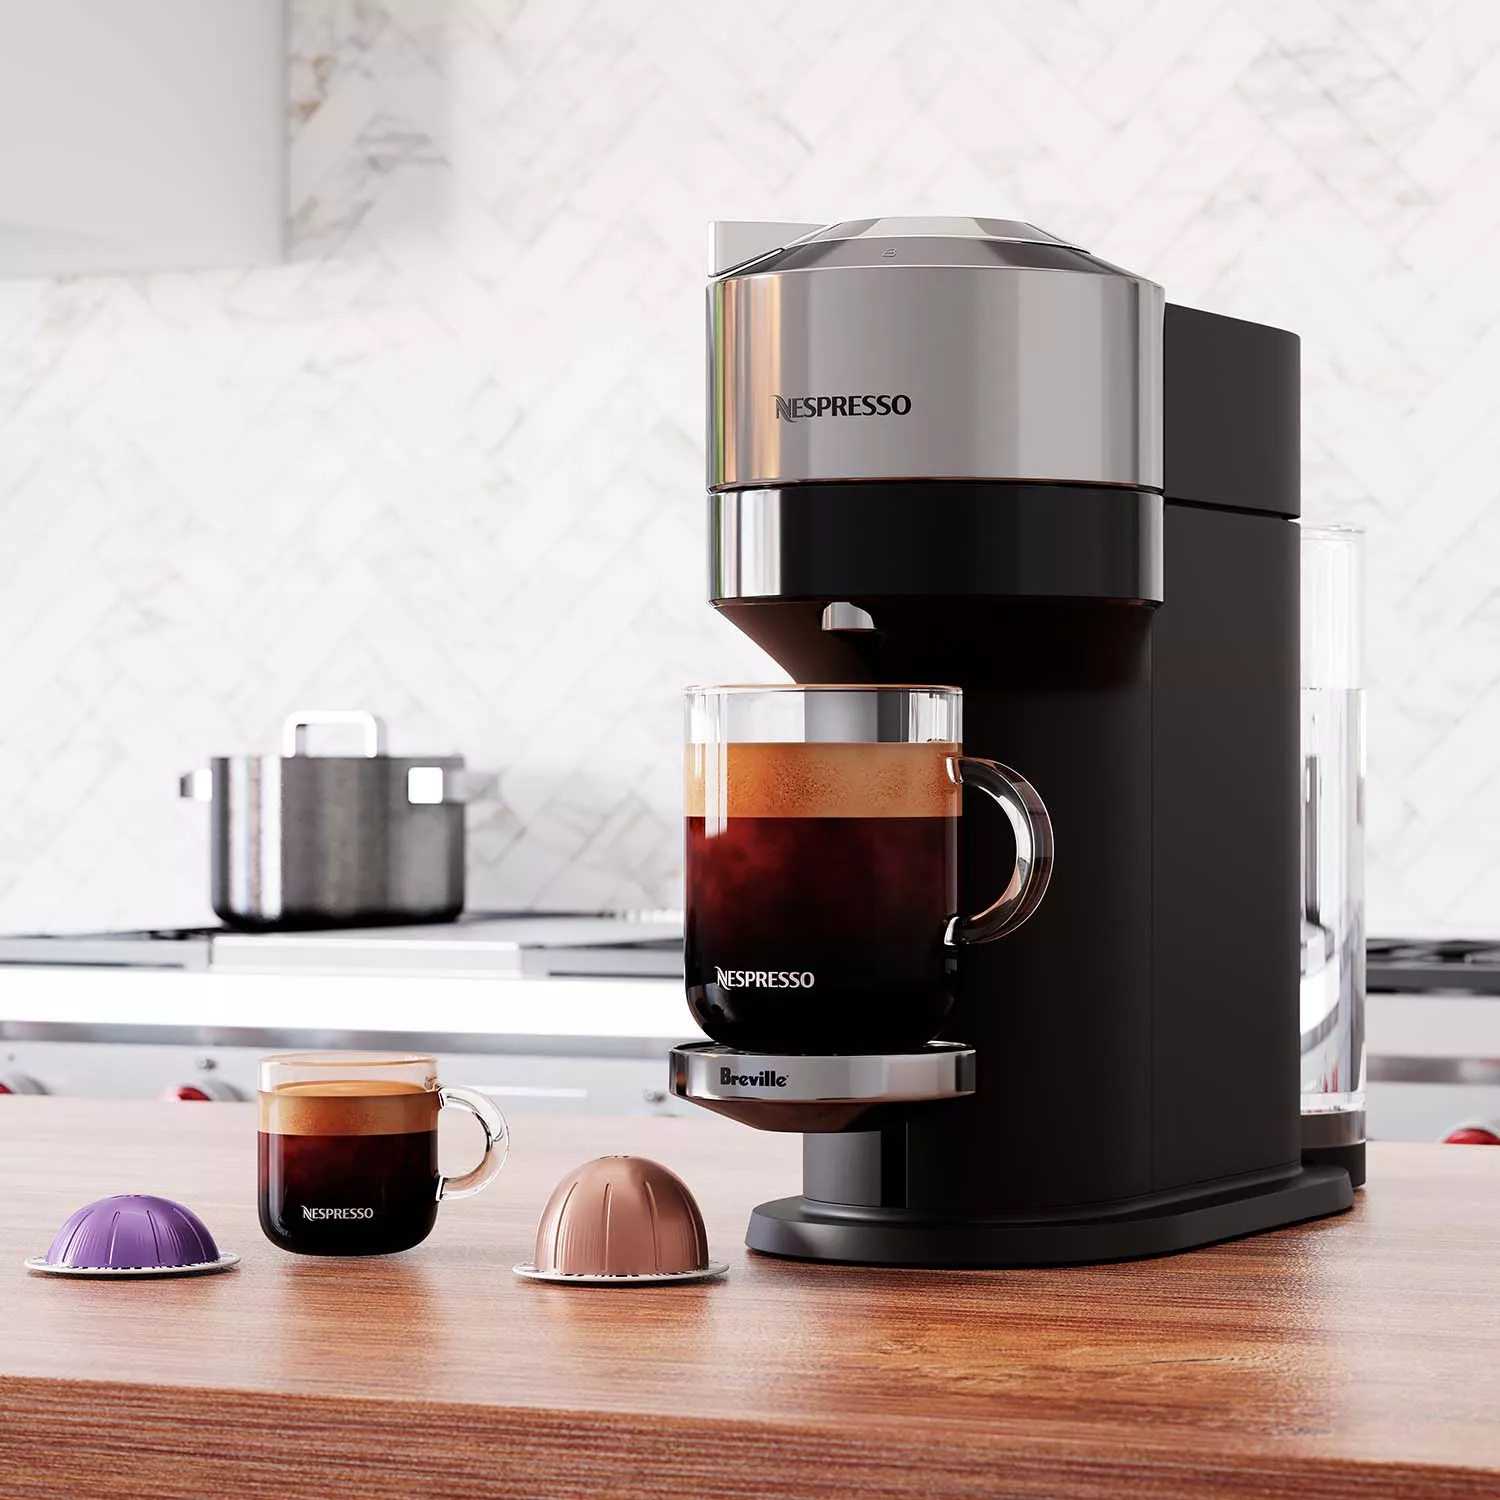 Nespresso Vertuo Next Deluxe Coffee and Espresso Maker by Breville